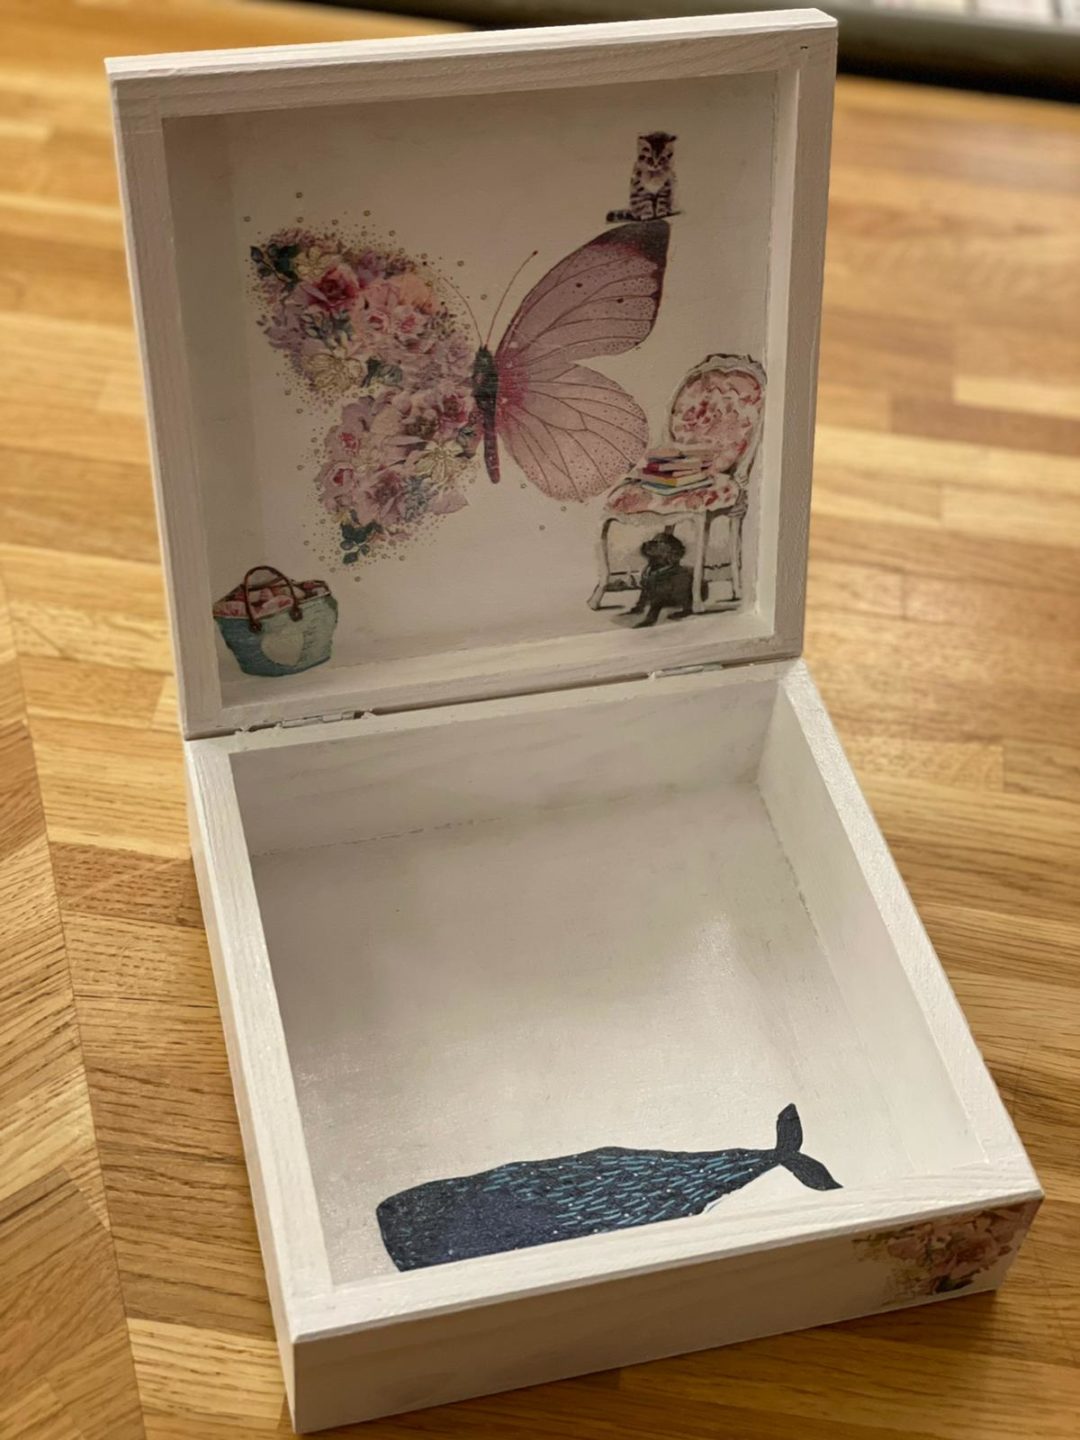 zdjęcie przedstawiające pudełko wykonane metodą decoupage w środku wzory z motylem i wielorybem